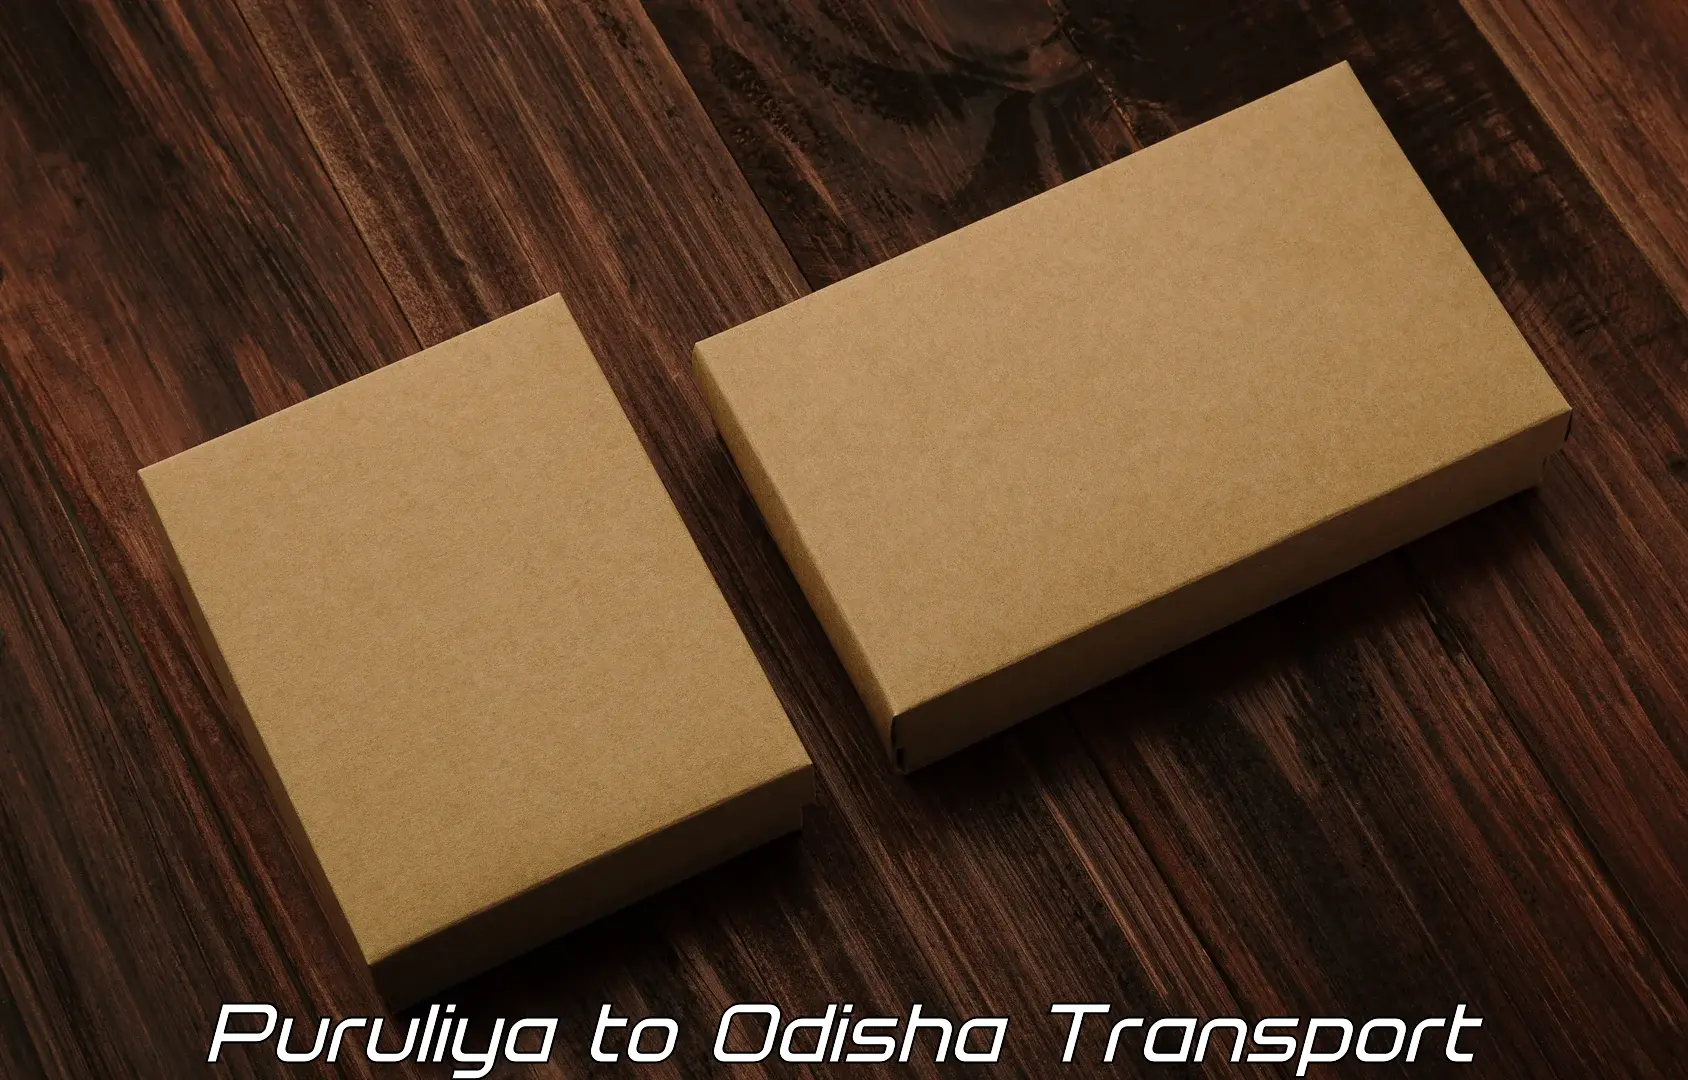 Daily parcel service transport Puruliya to Ganjam